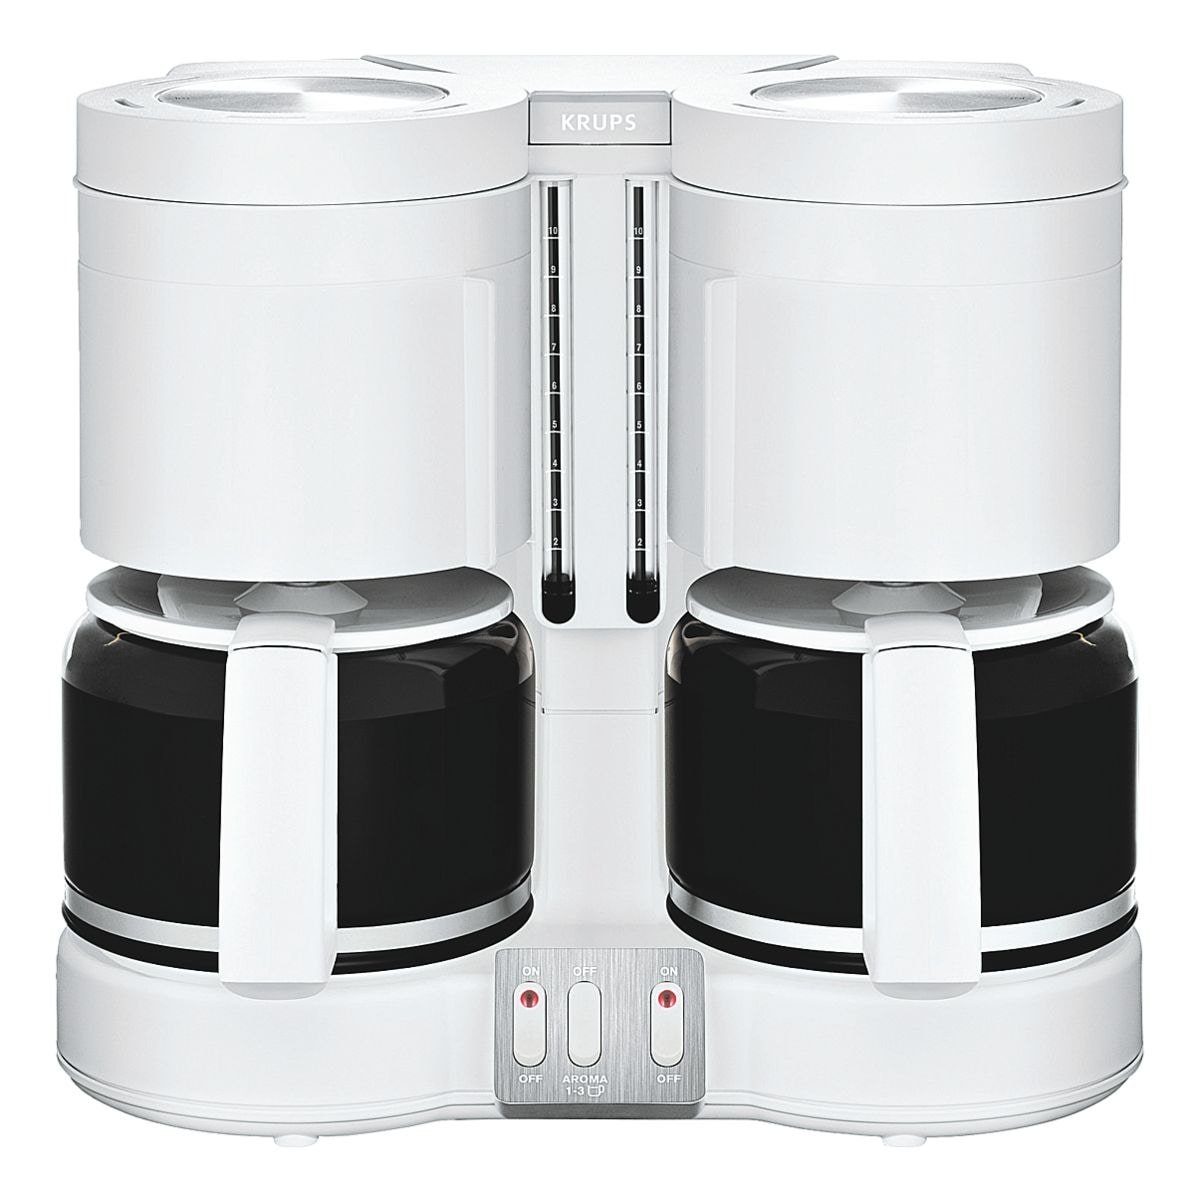 Krups Filterkaffeemaschine Duothek Plus, Kaffeemaschine für 2x 10 Tassen weiß